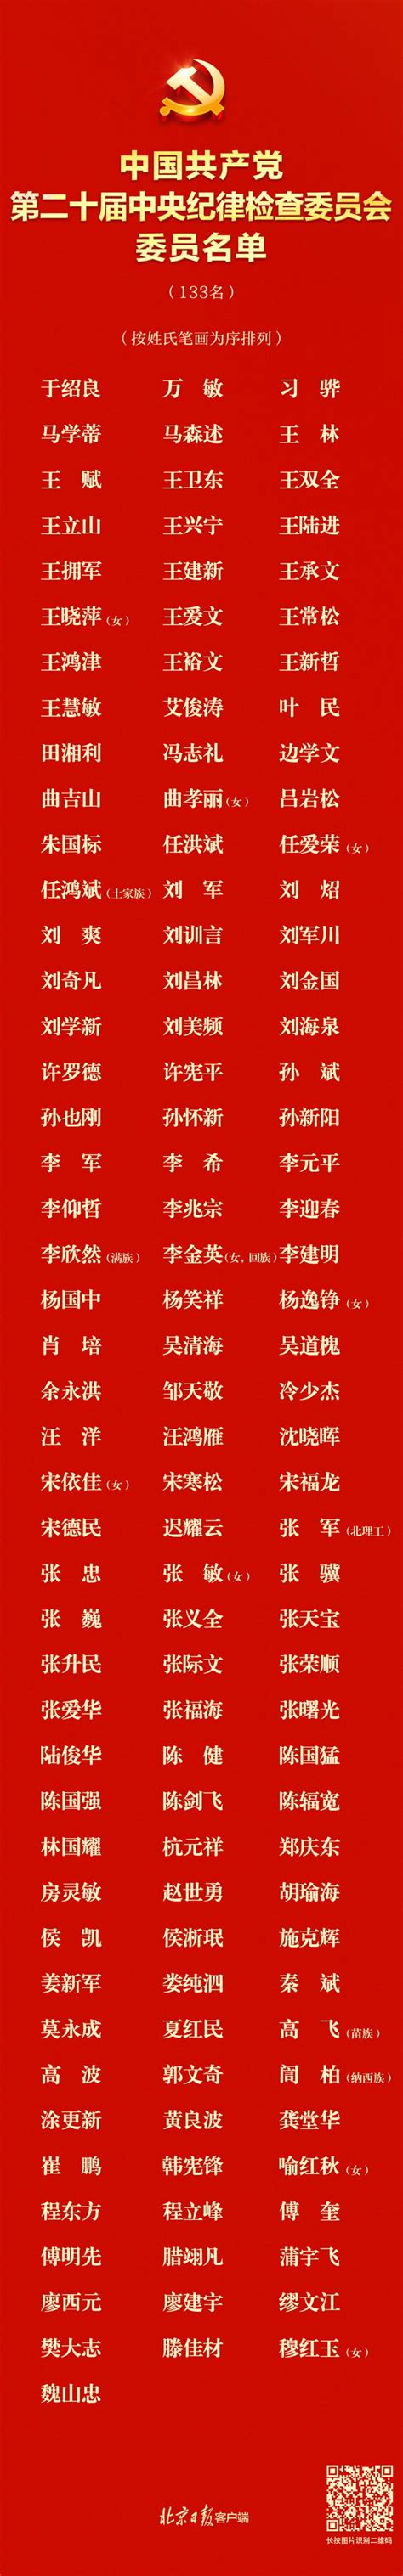 南京审计大学第三届研究生院团委副书记名单公示